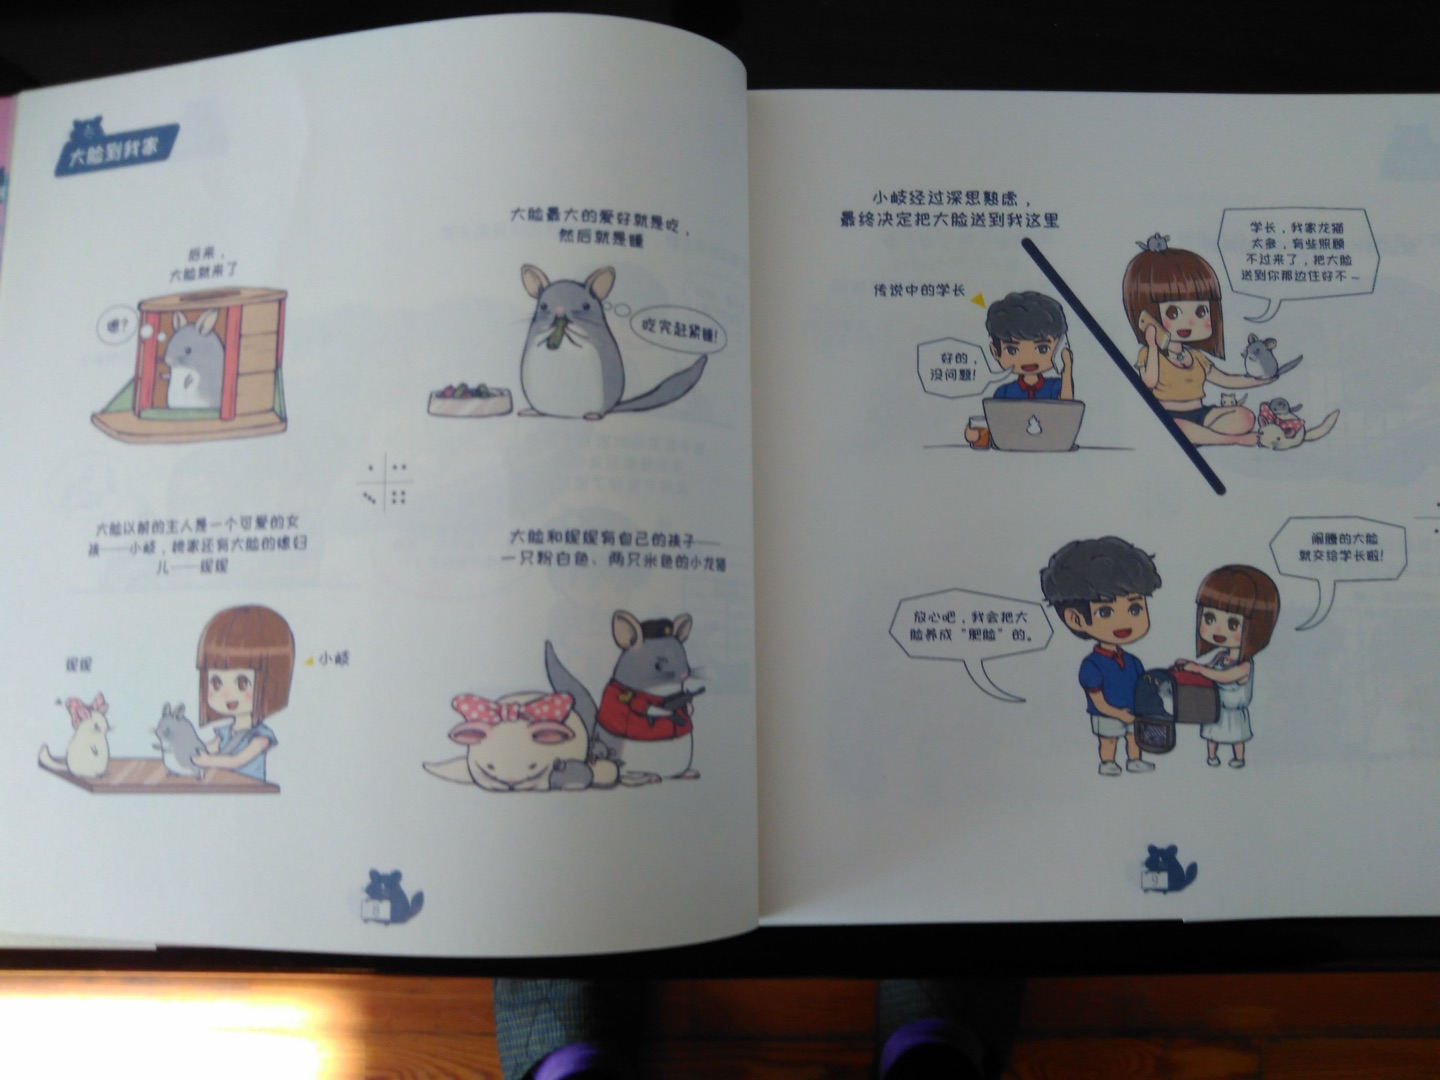 终于买到这本书了，众多龙猫迷强推的书，韩大大画的棒棒的，也学到了怎么养龙猫，很有爱，强烈推荐